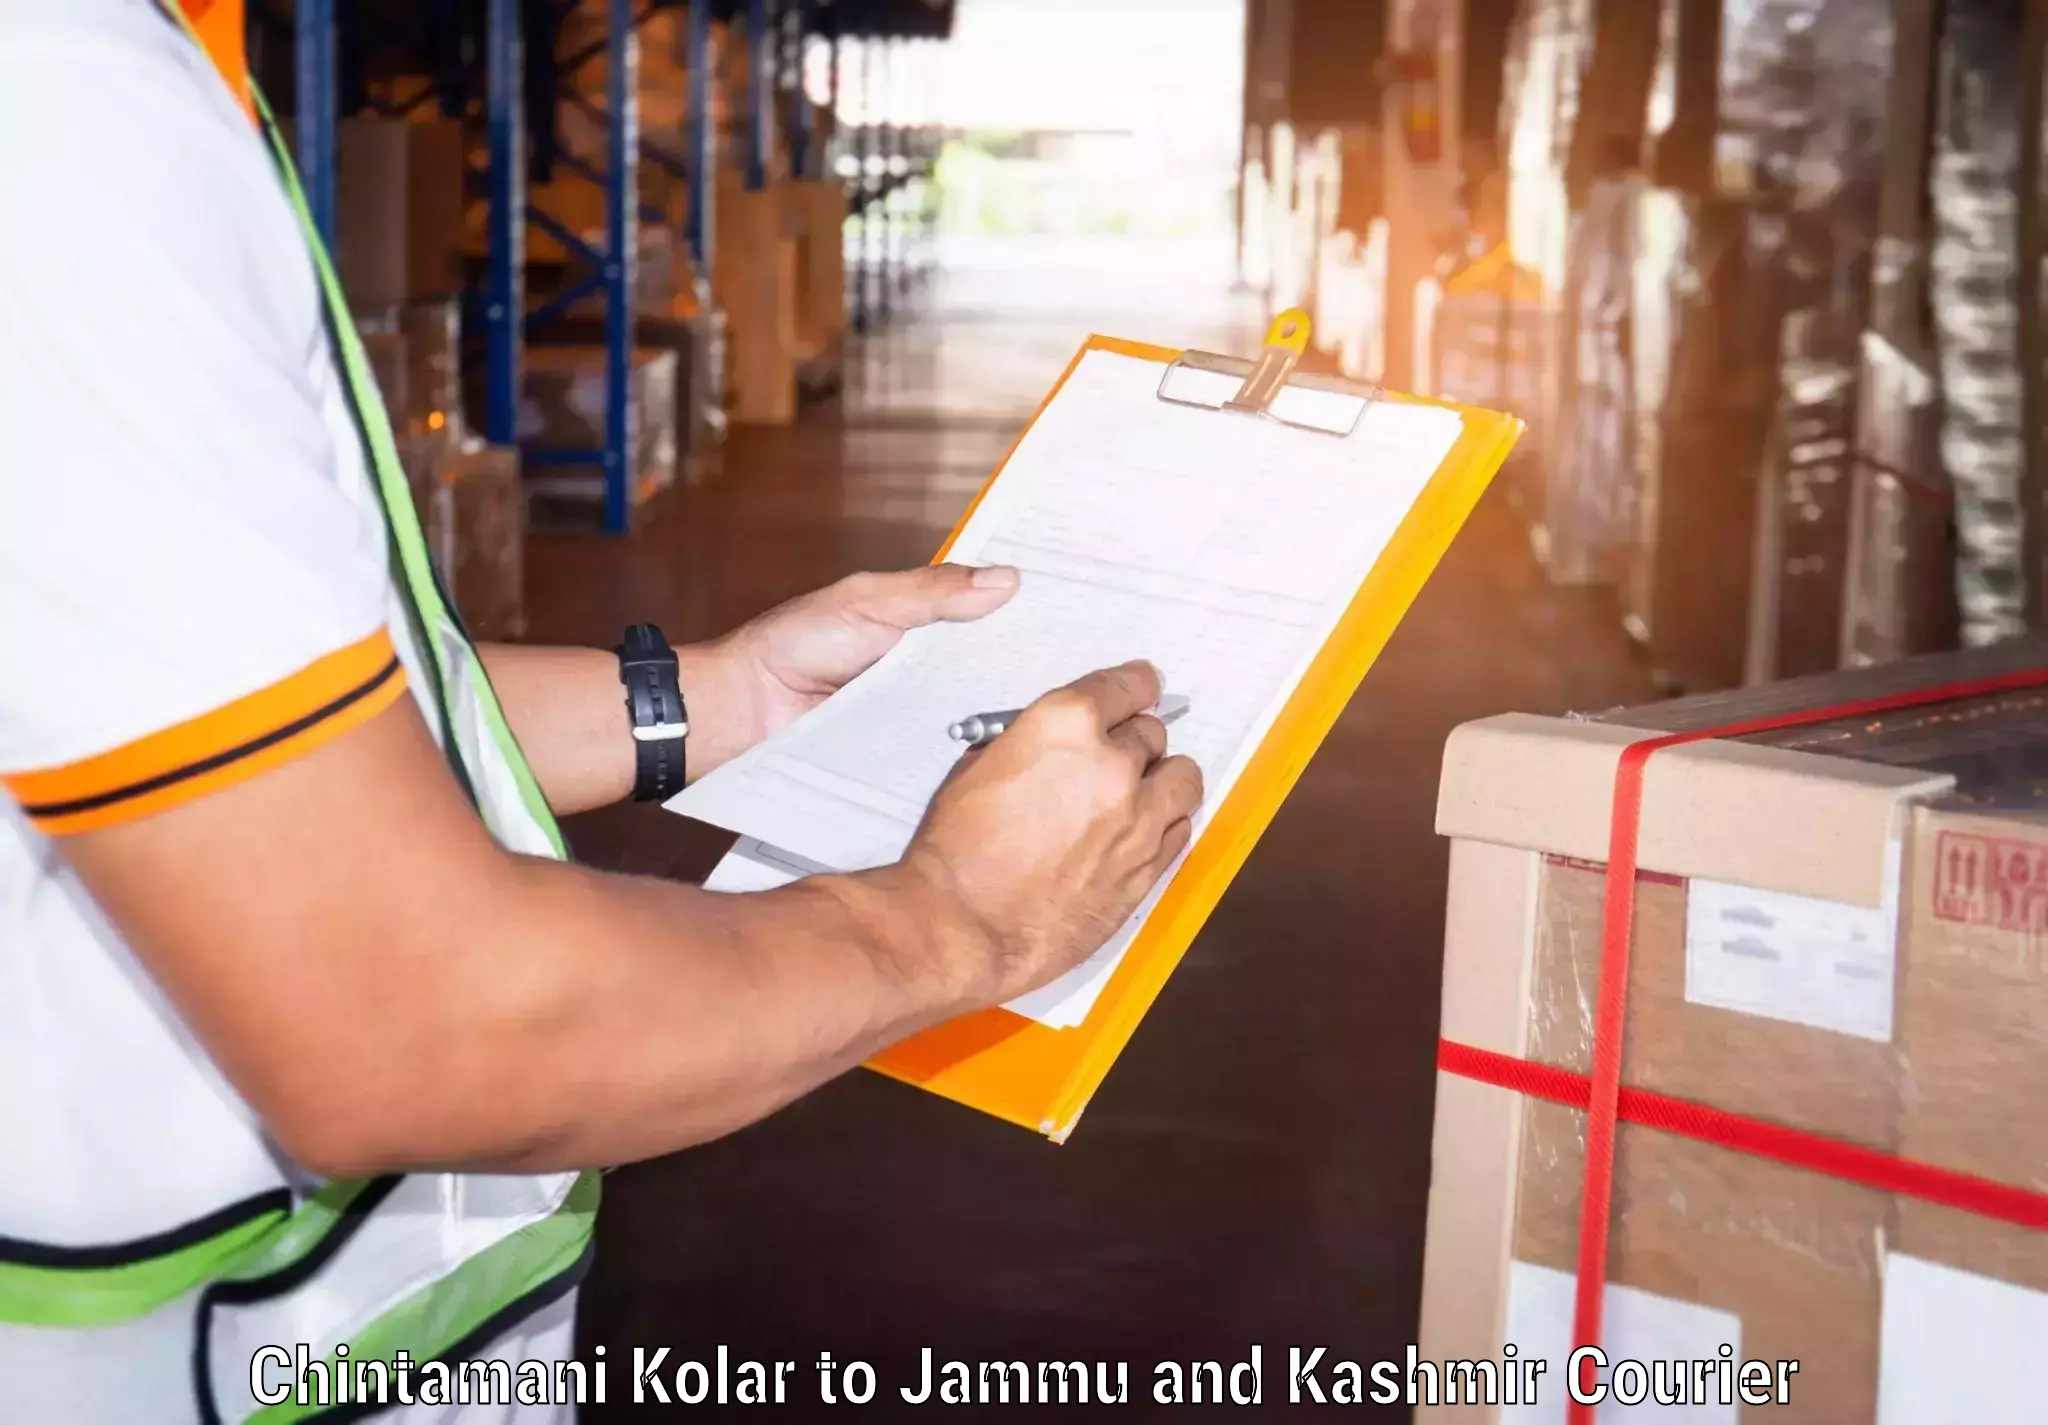 Next-day freight services Chintamani Kolar to Katra